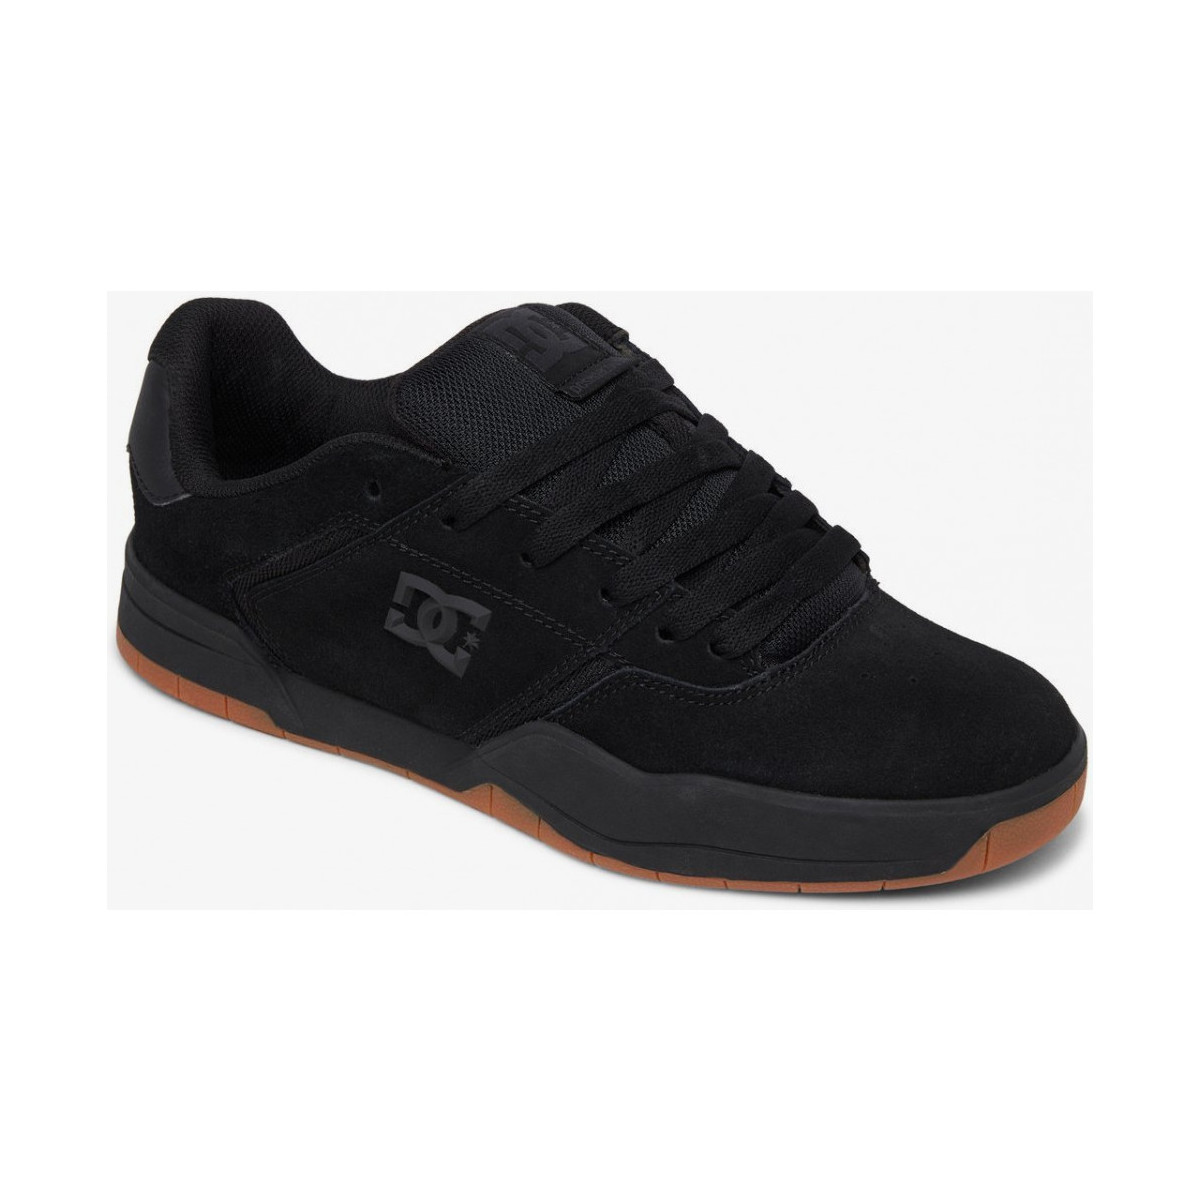 Chaussures Chaussures de Skate DC Shoes CENTRAL black gum Noir